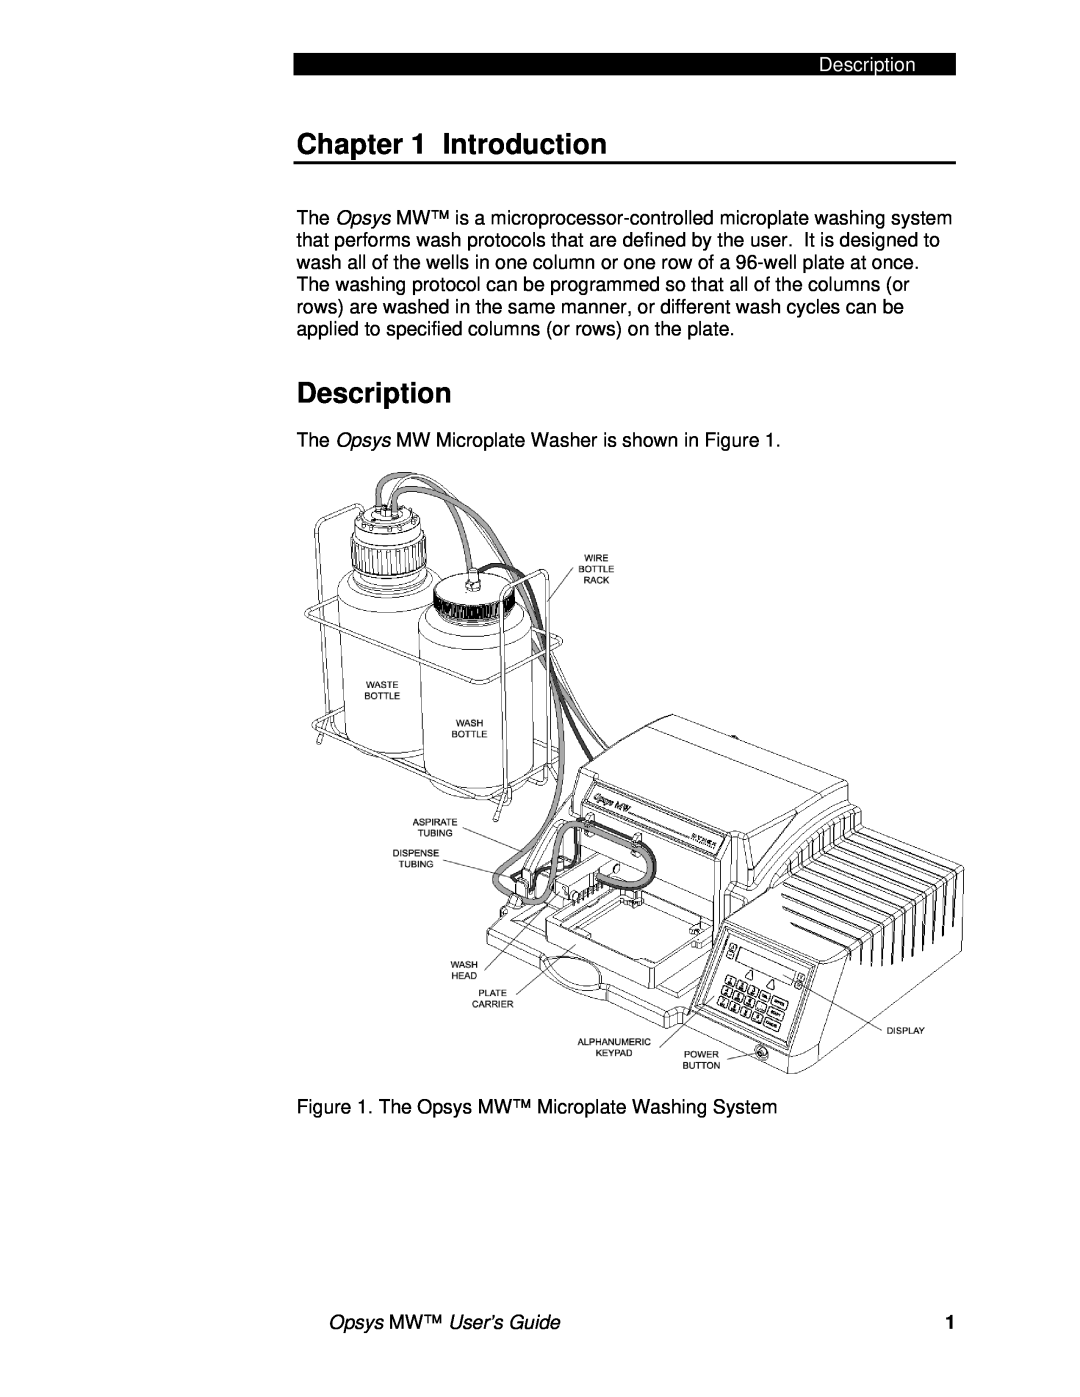 Dynex 91000051 manual Introduction, Description 